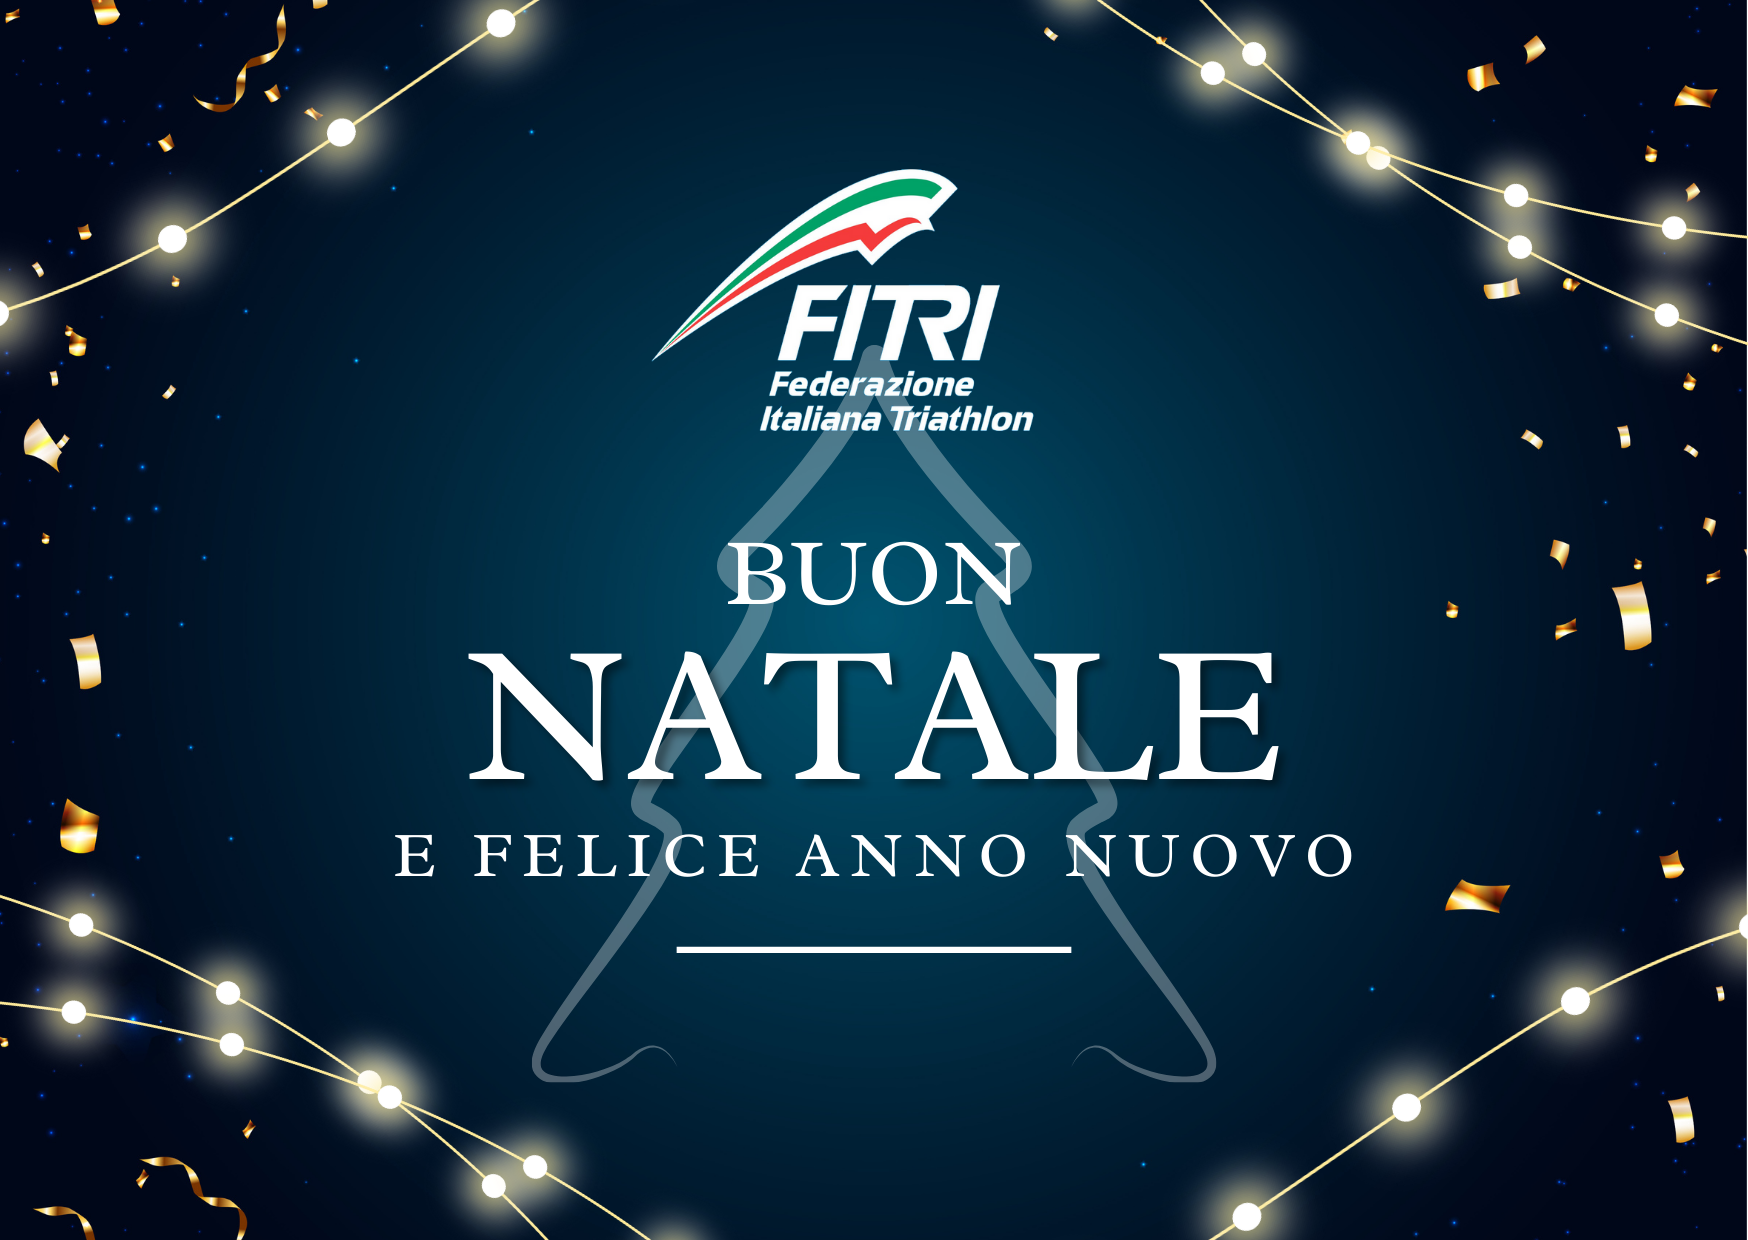 Auguri di Buone Feste dalla Federazione Italiana Triathlon